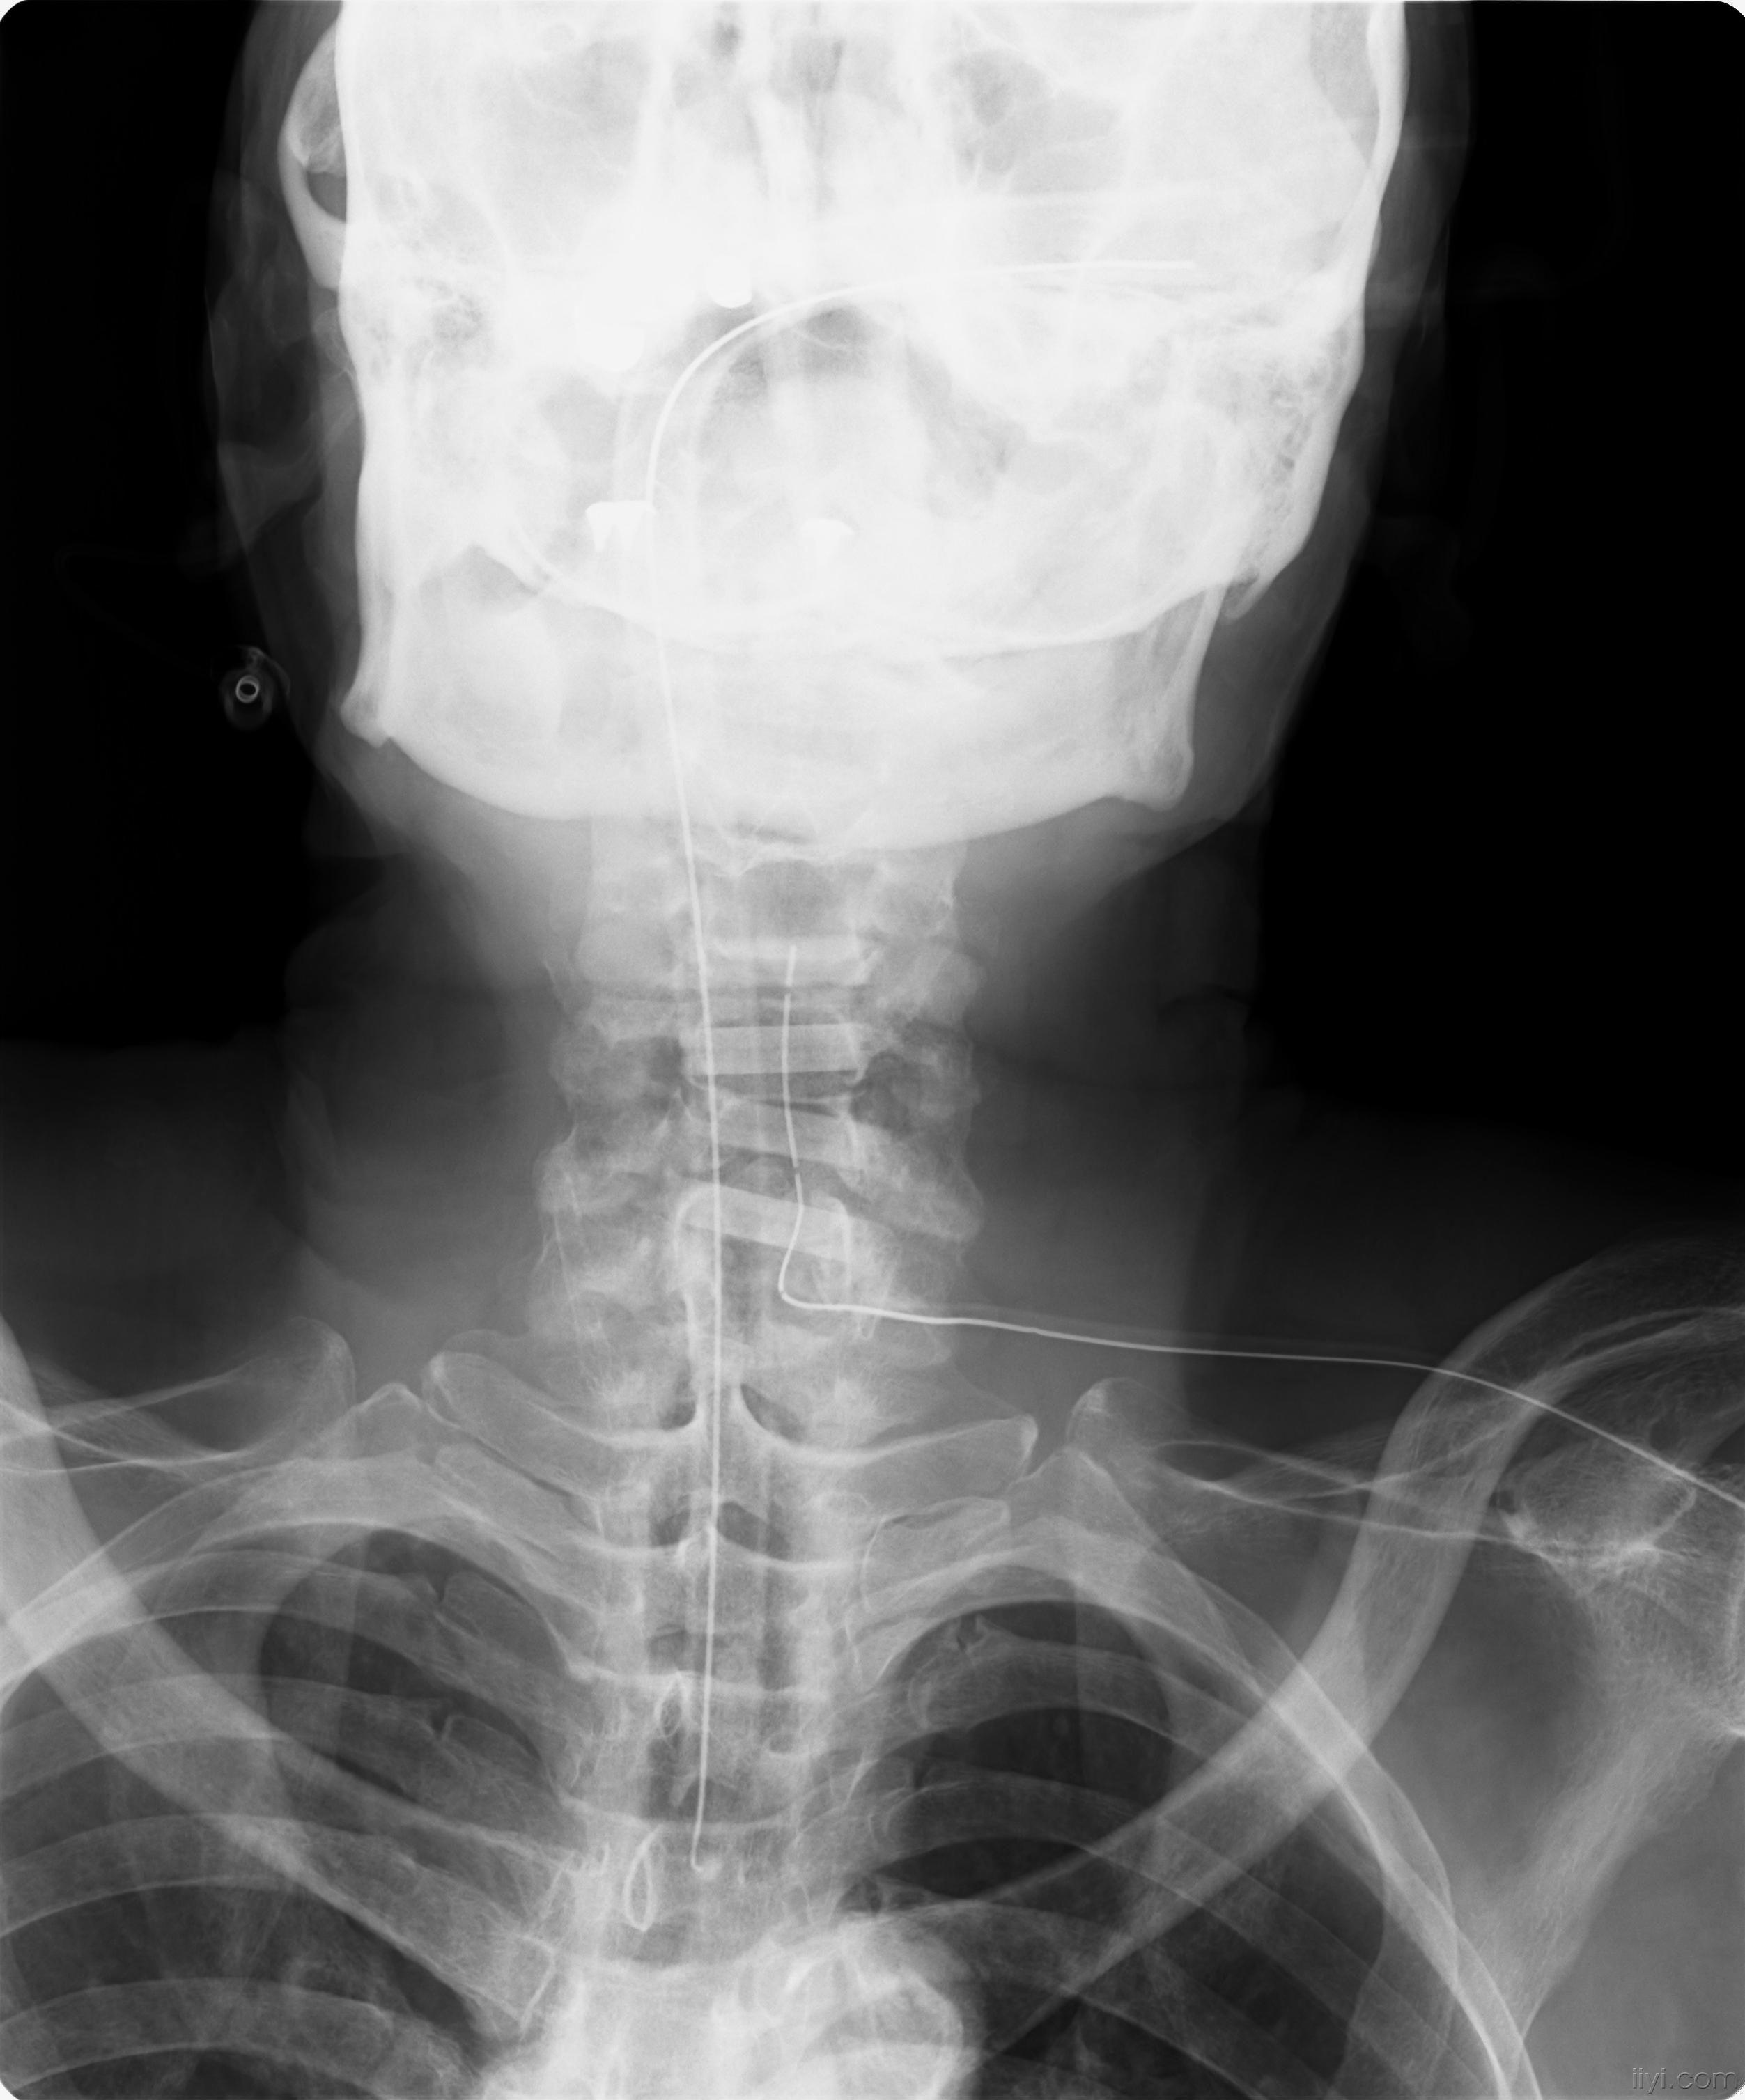 人工骨spacer运用治疗颈椎椎管狭窄症一例